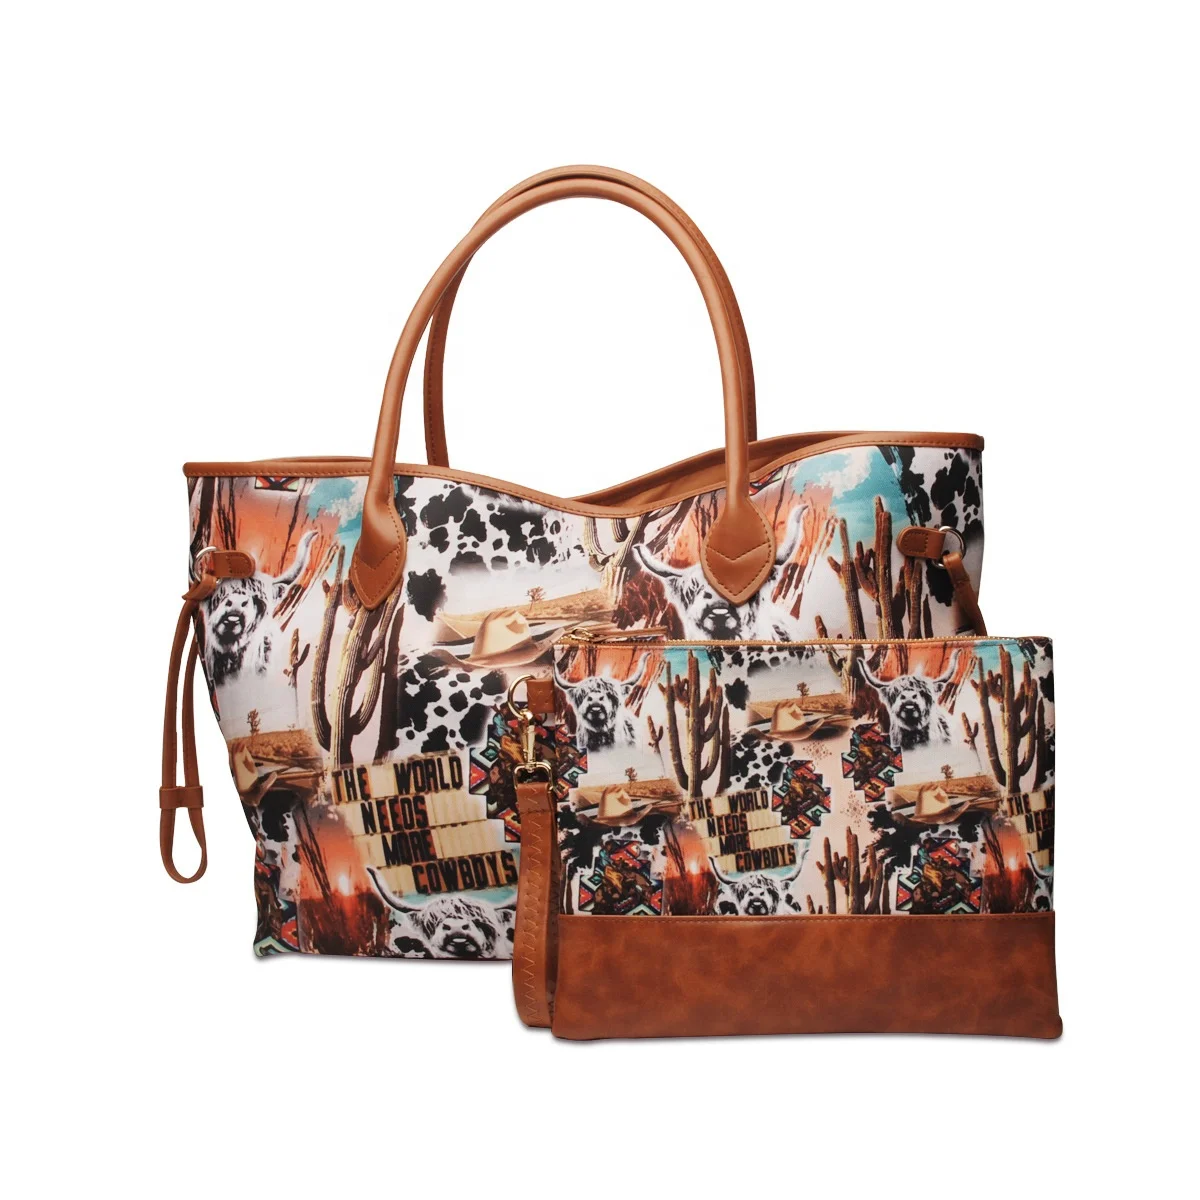 

Women's Fashion Shoulder Bag Large Capacity Printing Handbag Canvas Tote Bag Travel Shopping Bag With Matching Wallet, 6 colors